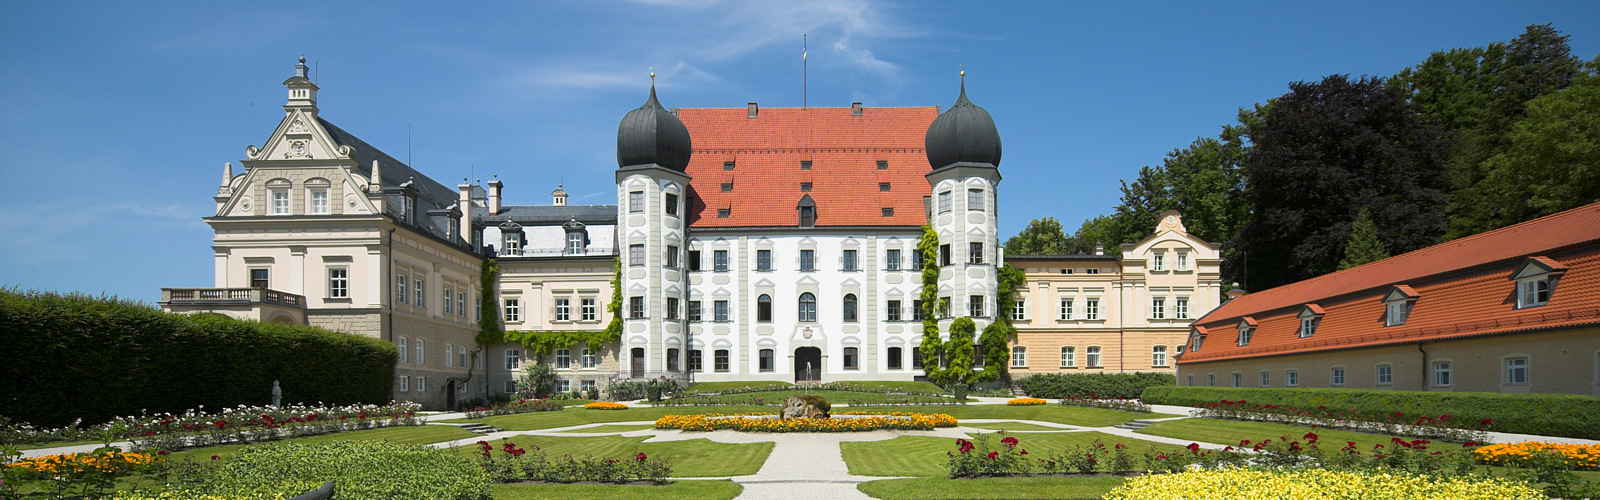 Schloss Maxlrain im Süd-Osten von München